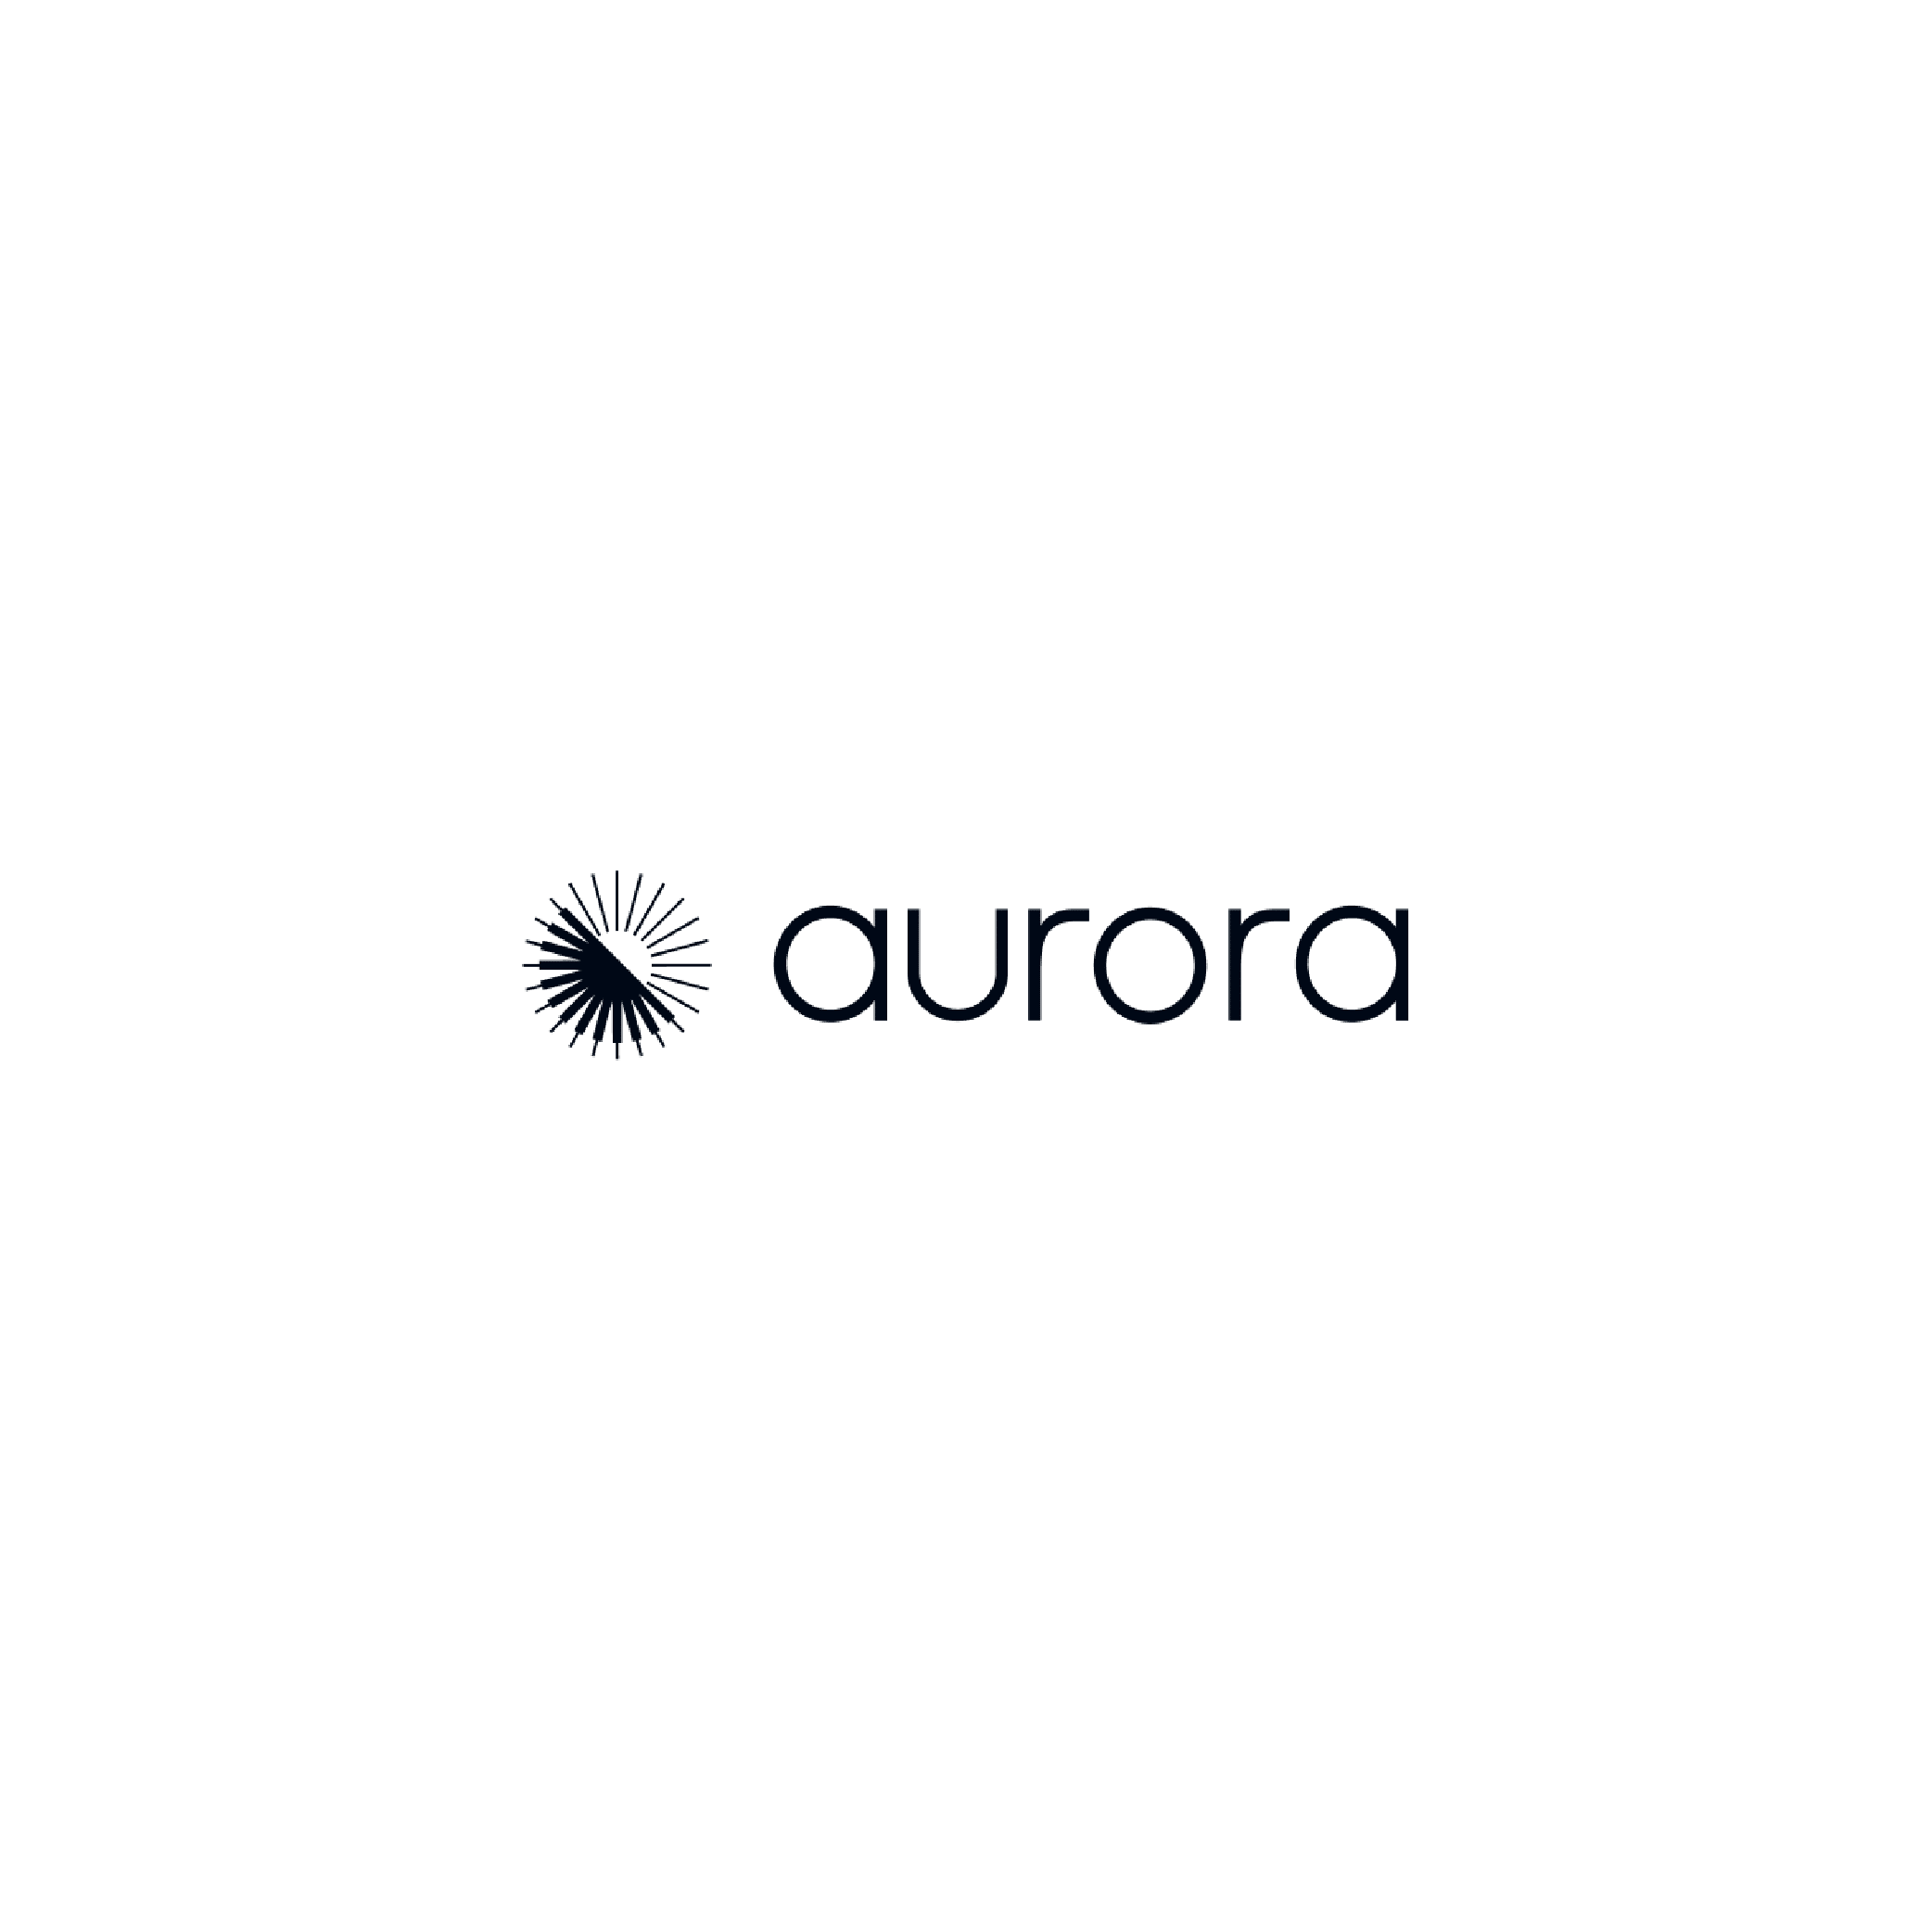 logo_aurora